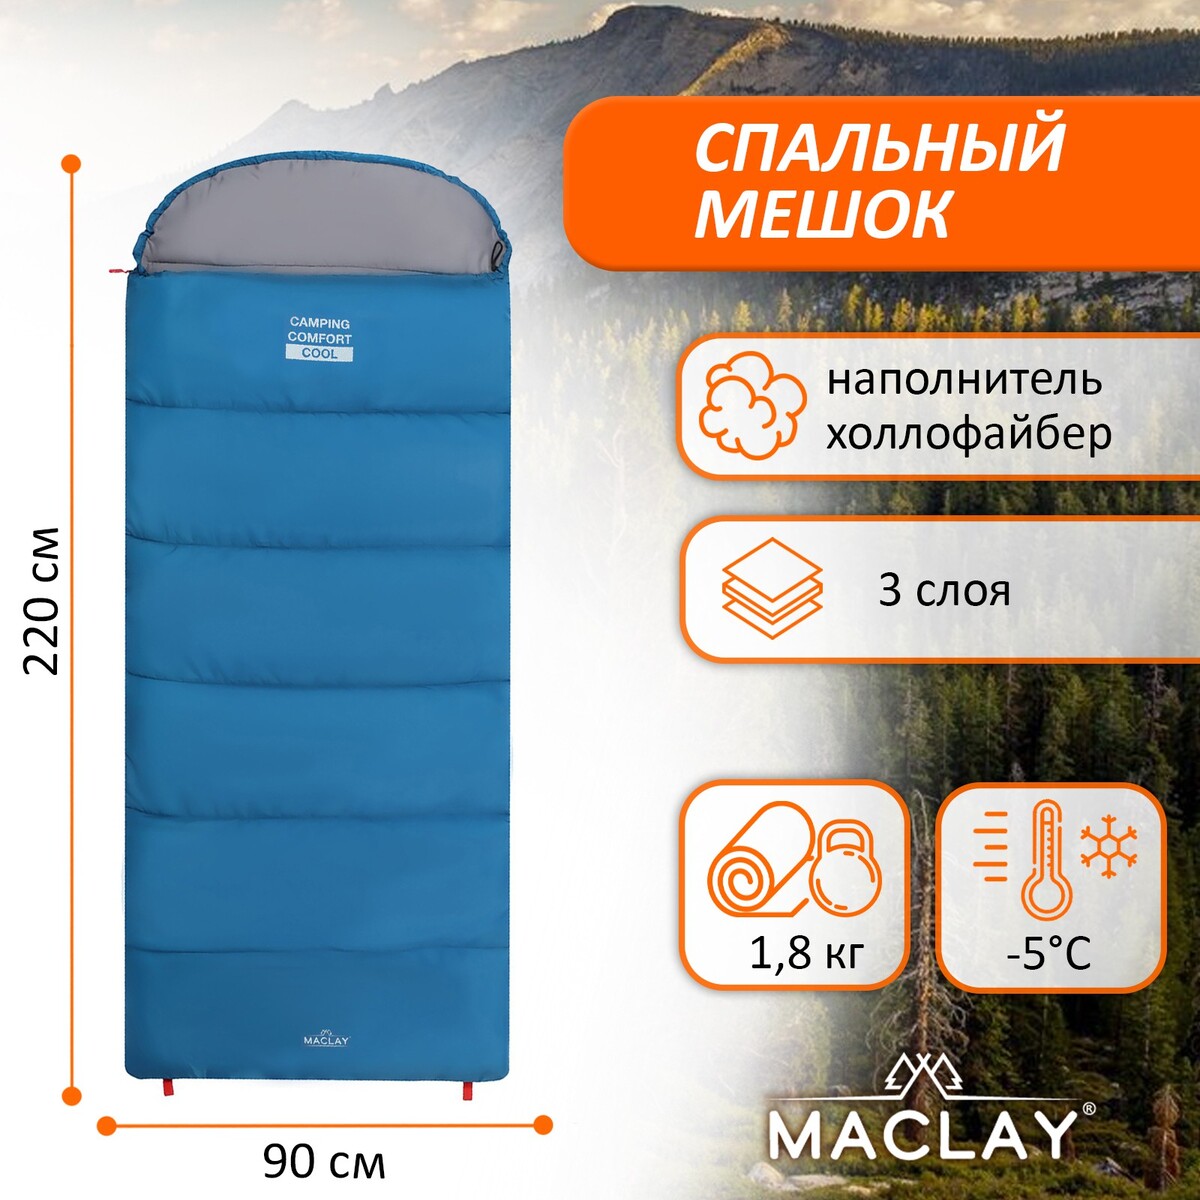 Спальный мешок maclay camping comfort cool, 3-слойный, правый, 220х90 см, -5/+10°с спальный мешок maclay camping comfort cool 3 слойный левый 220х90 см 5 10°с